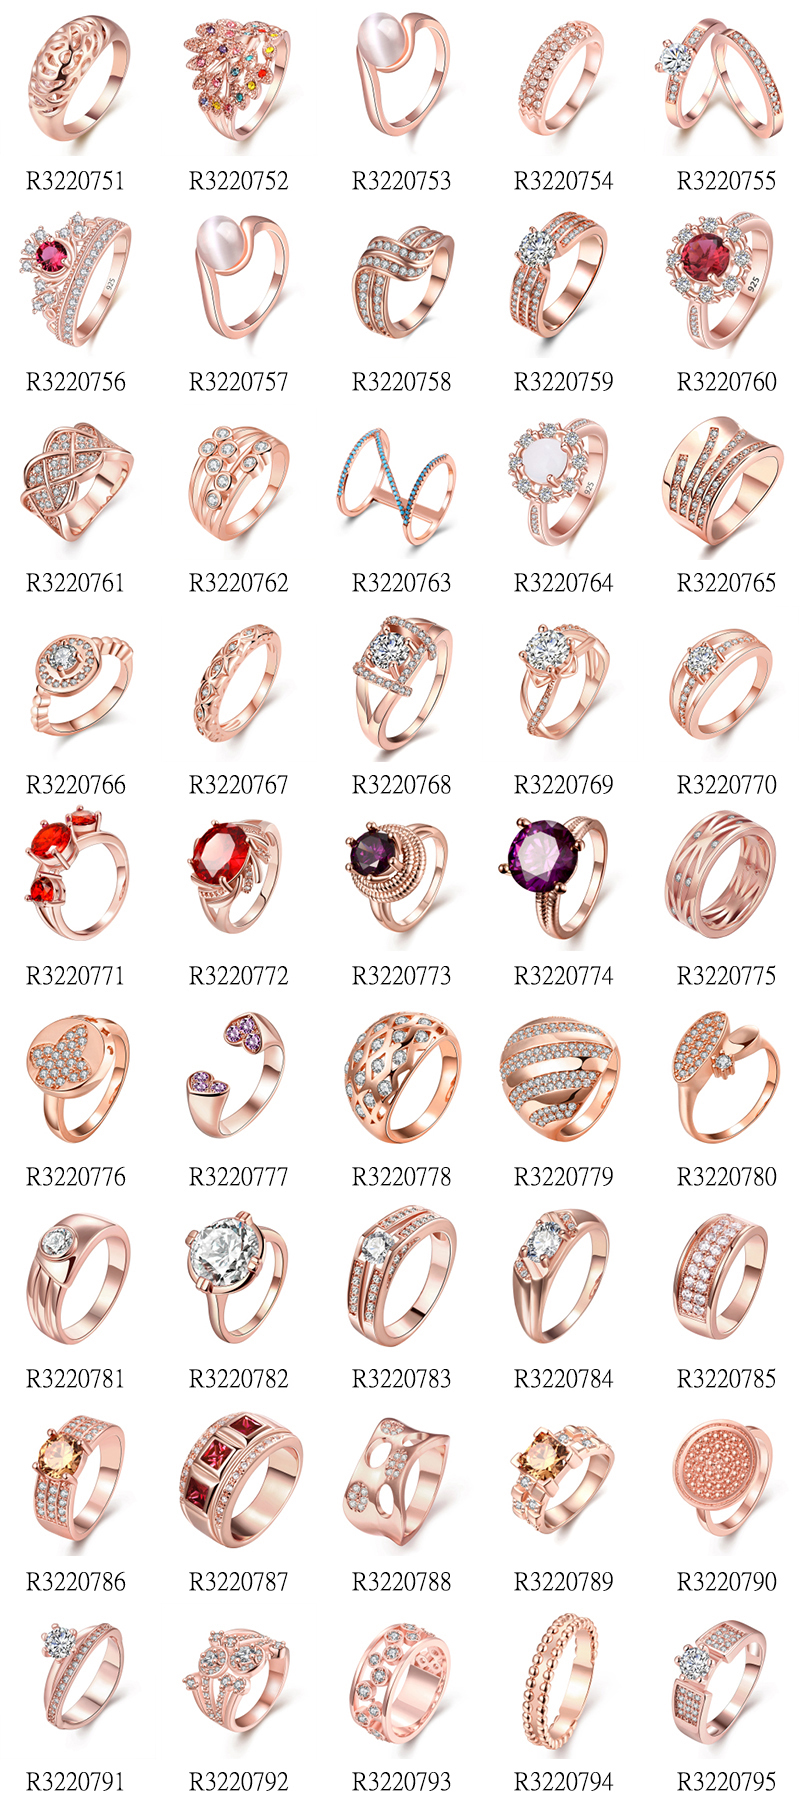 New Ladies ring Design || ||... - JEWELLERY GARDEN PVT LTD | Facebook